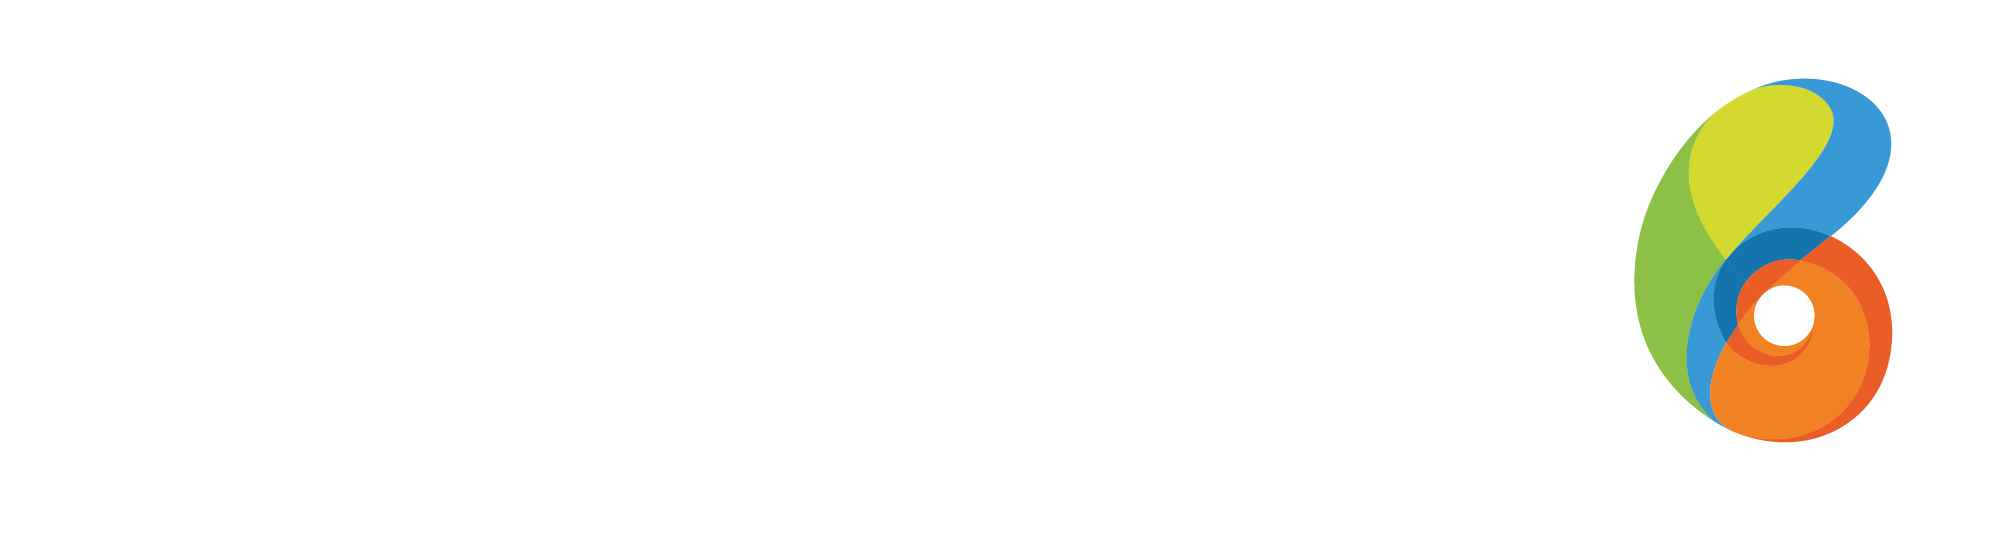 Grupo Boticário